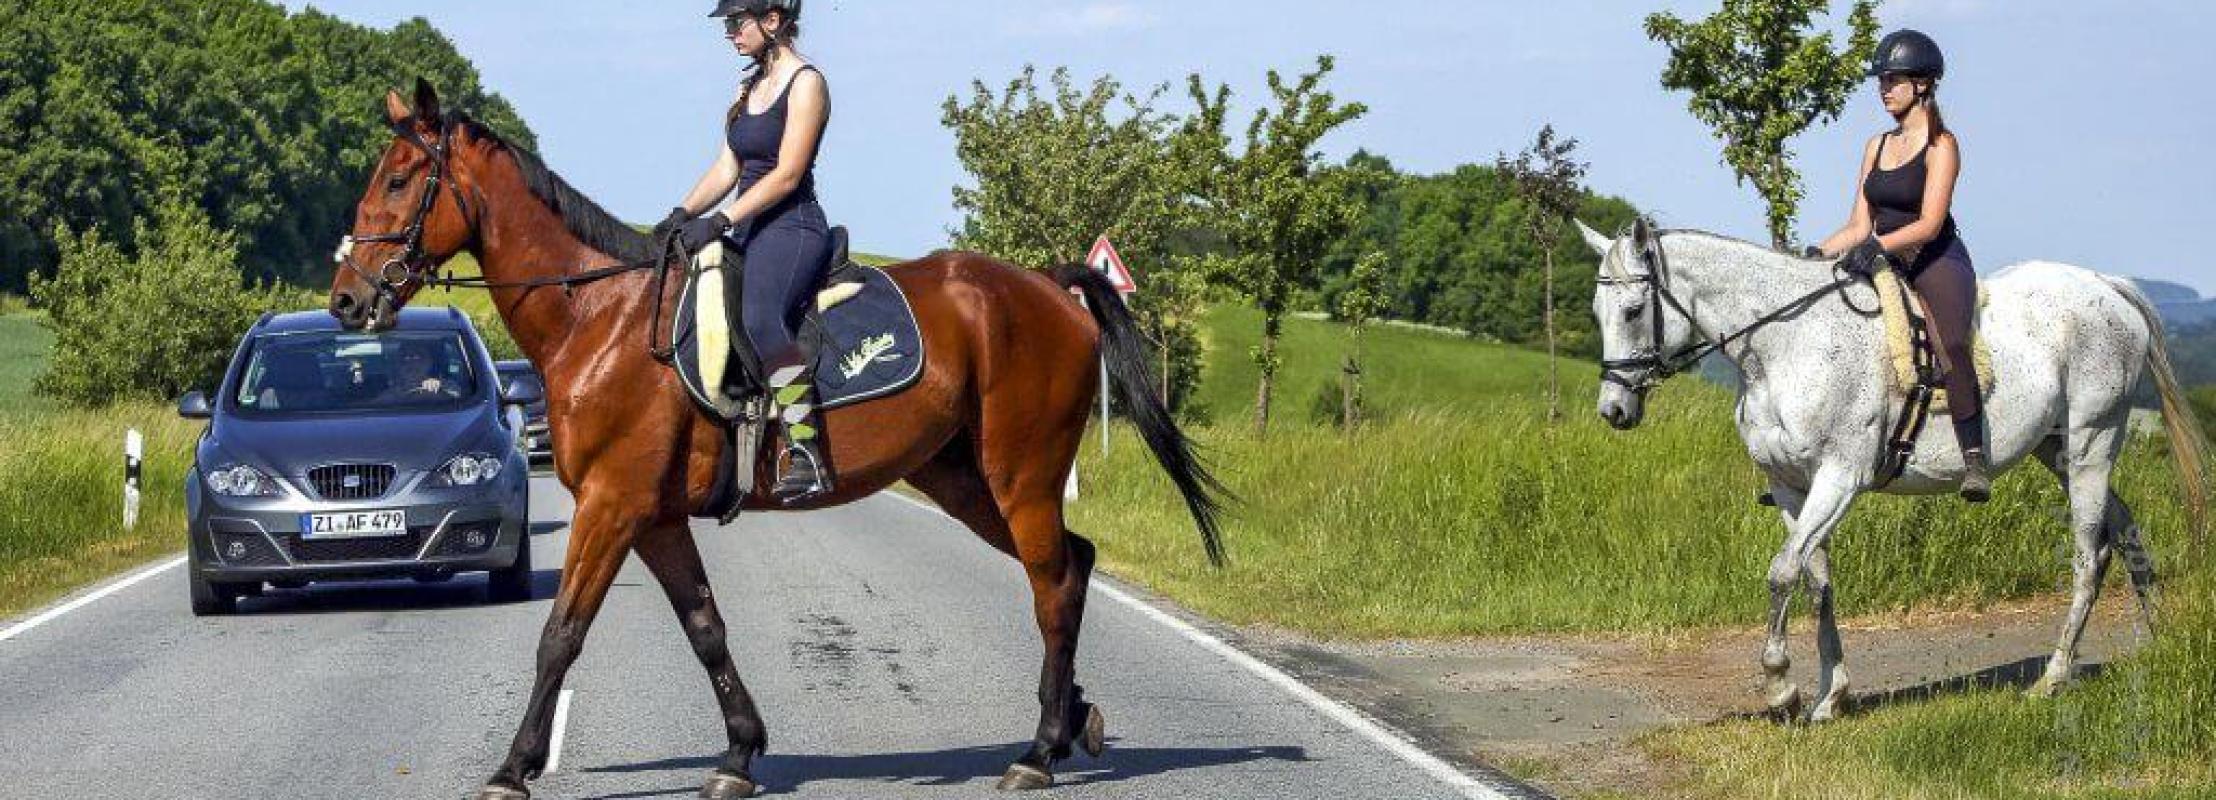 Wat moet je doen als je een paard op de weg tegenkomt?